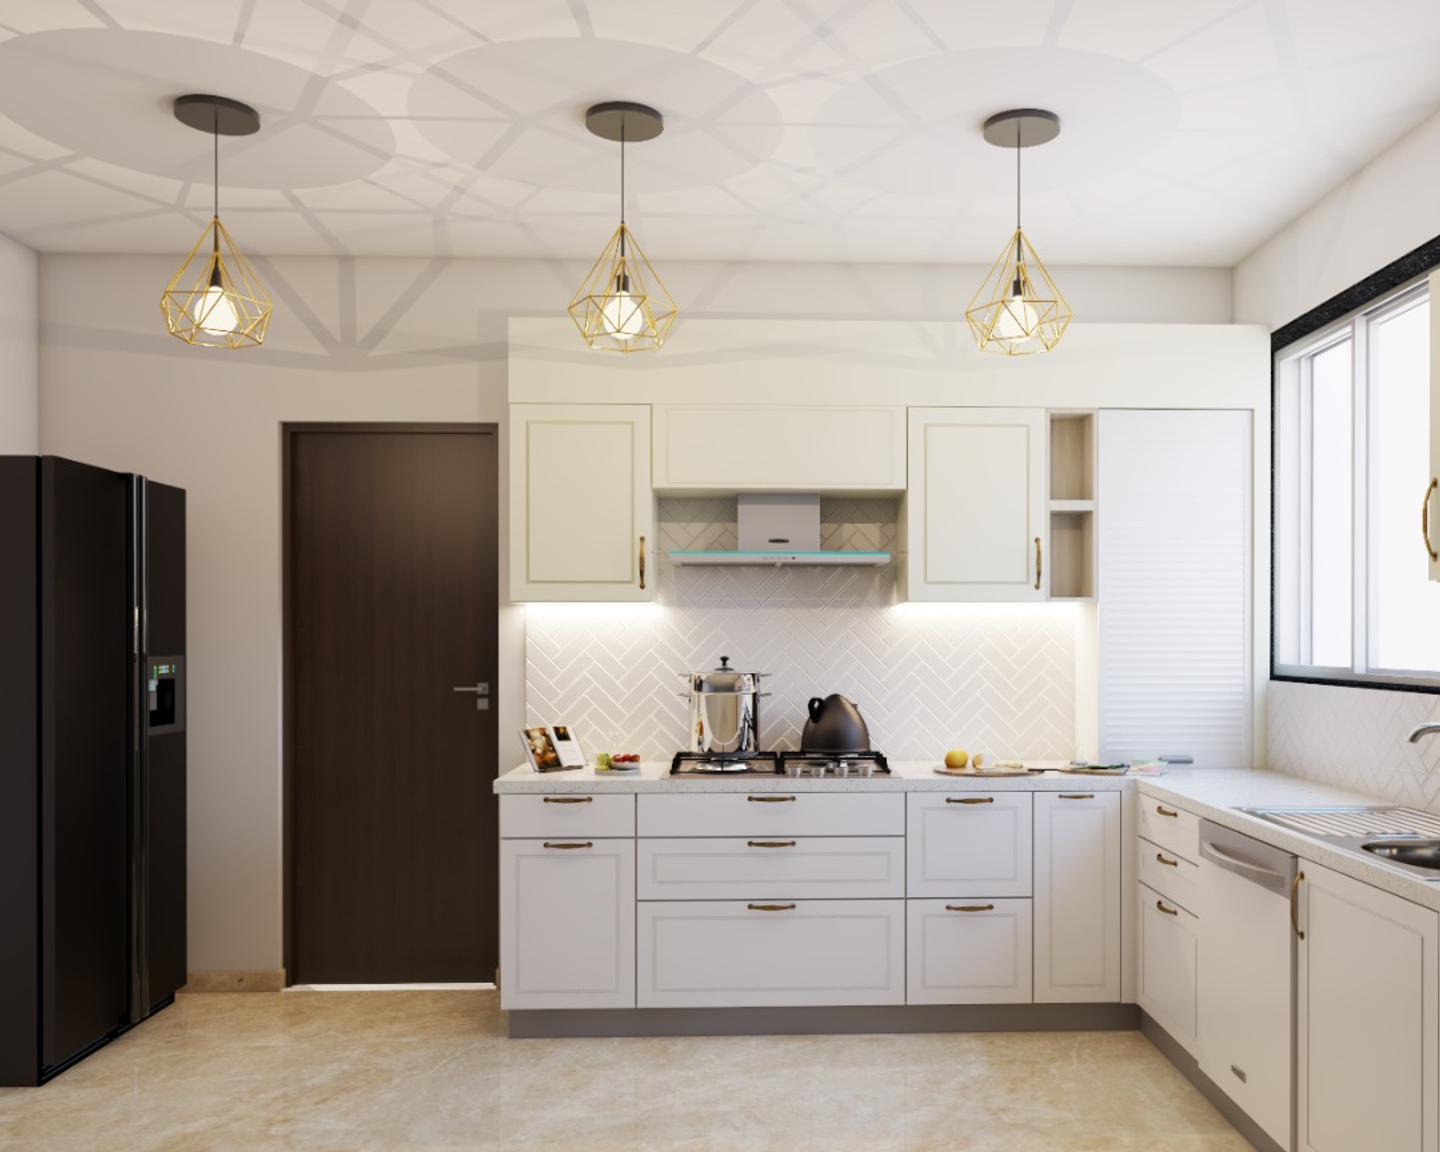 Modular All-White Kitchen Design - Livspace